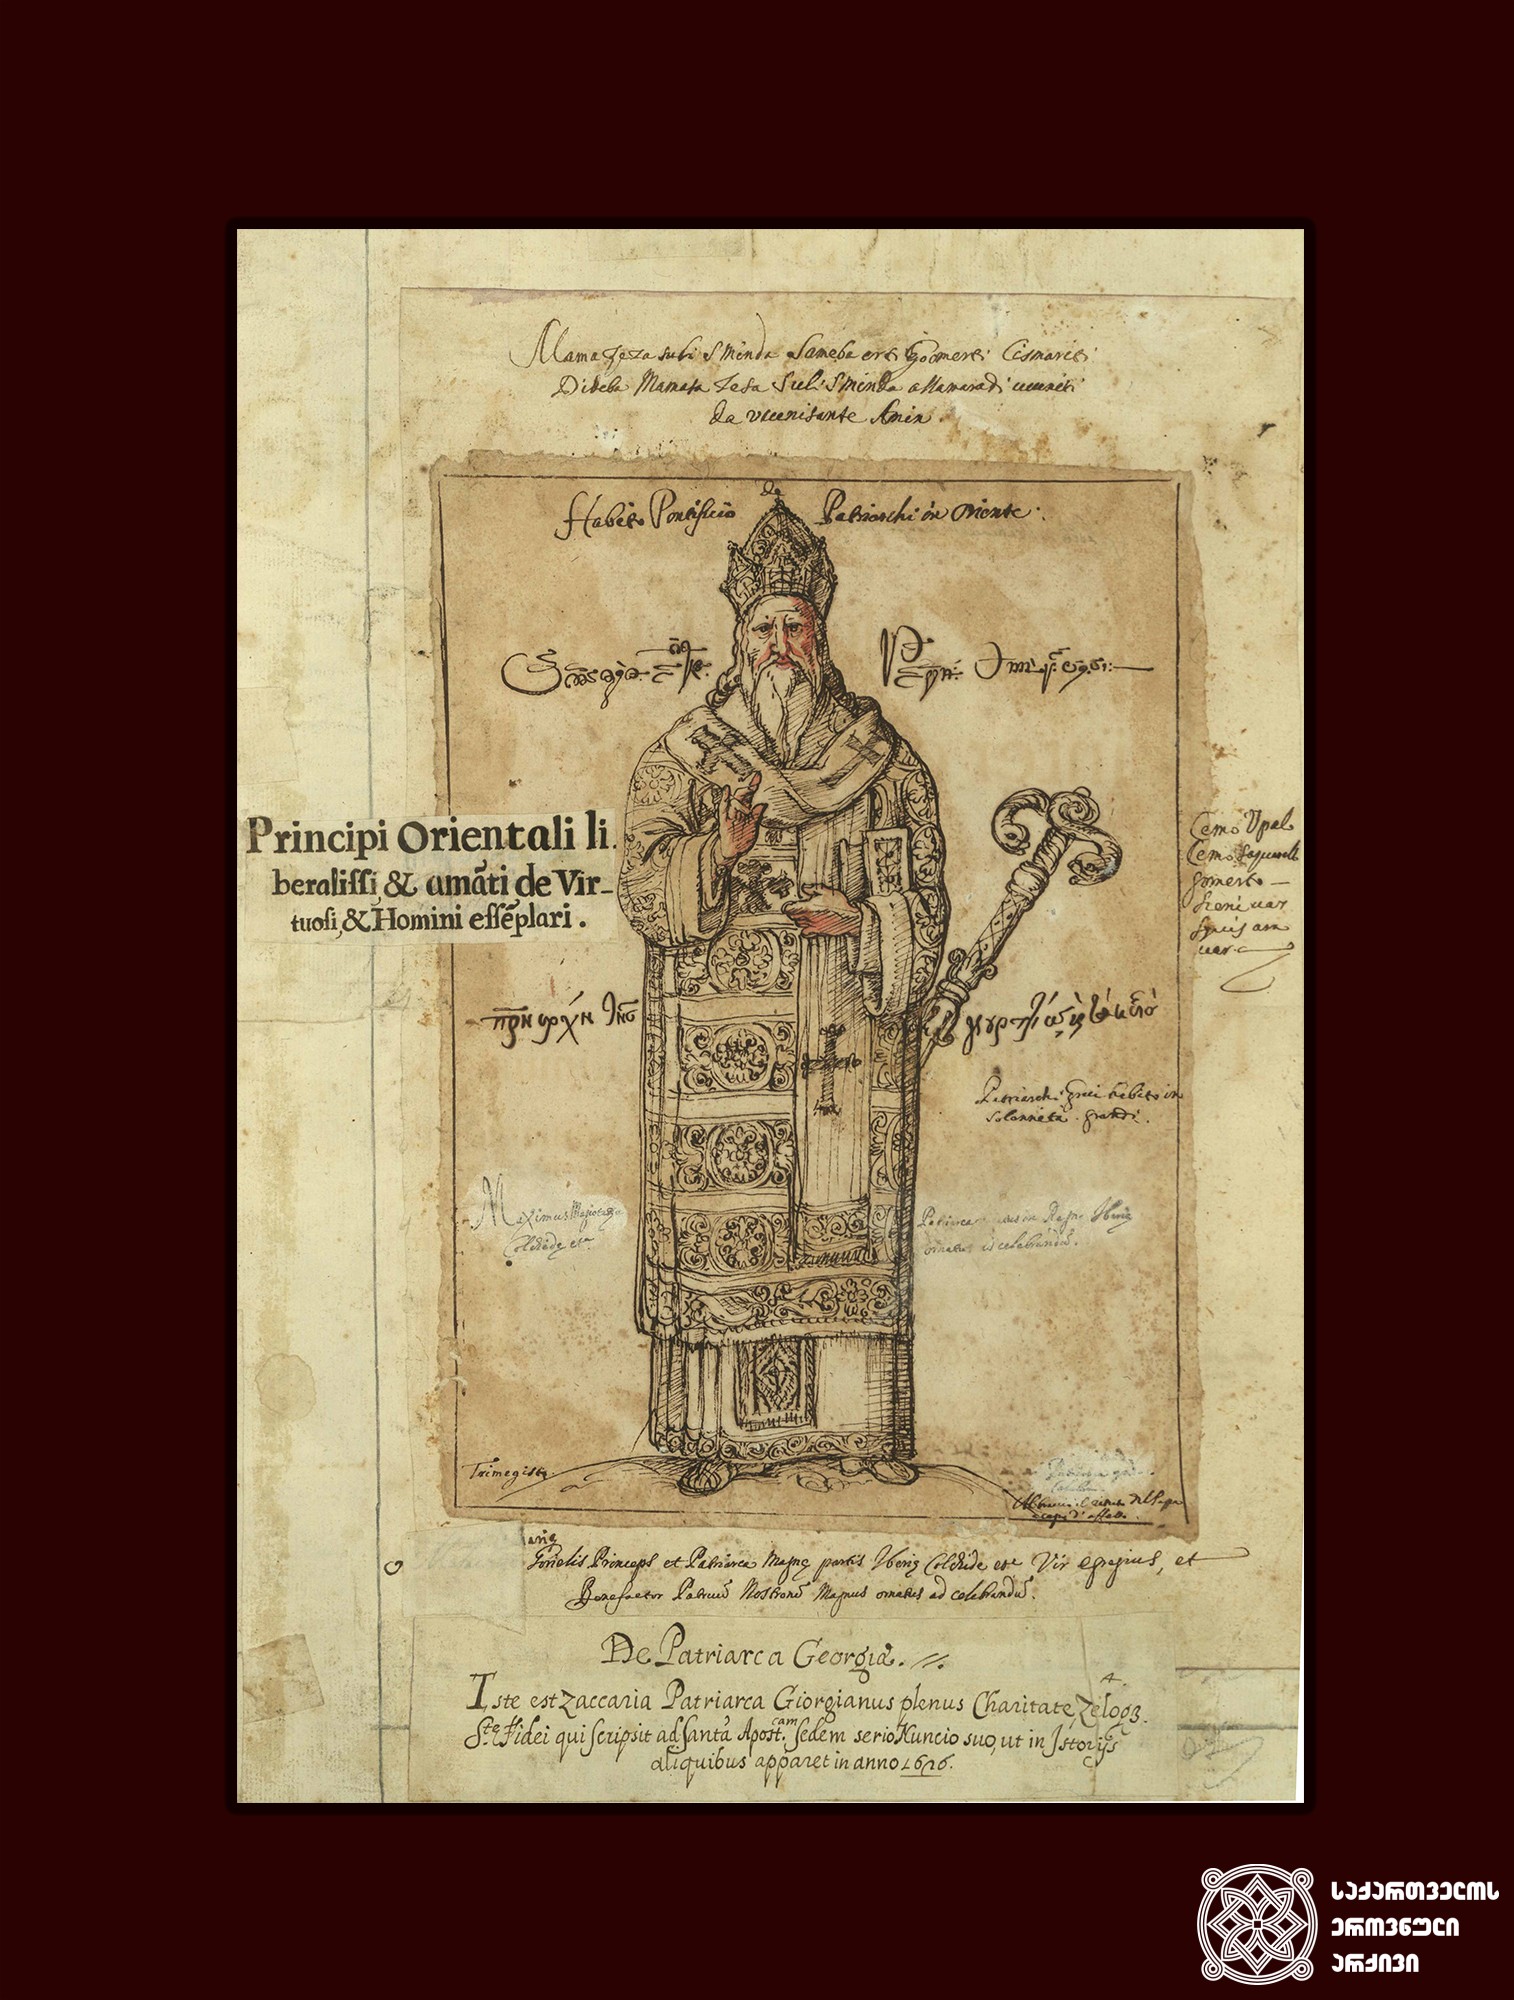 ზაქარია (ქვარიანი) - დასავლეთ საქართველოს (აფხაზეთი) კათოლიკოს-პატრიარქი (1657-1660 წლები). <br>
ცნობილი მისიონერისა და მოგზაურის დონ ქრისტოფორო დე კასტელის ალბომიდან. <br>
ფოტო მოგვაწოდა ალექსანდრე მიქაბერიძემ. <br>

Zacharia (Kvariani) - Catholicos-Patriarch of Western Georgia (Abkhazia) (1657-1660)
In the album of the famous missionary and traveler Don Cristoforo de Castelli. <br>
Photo from Alexander Mikaberidze. <br>